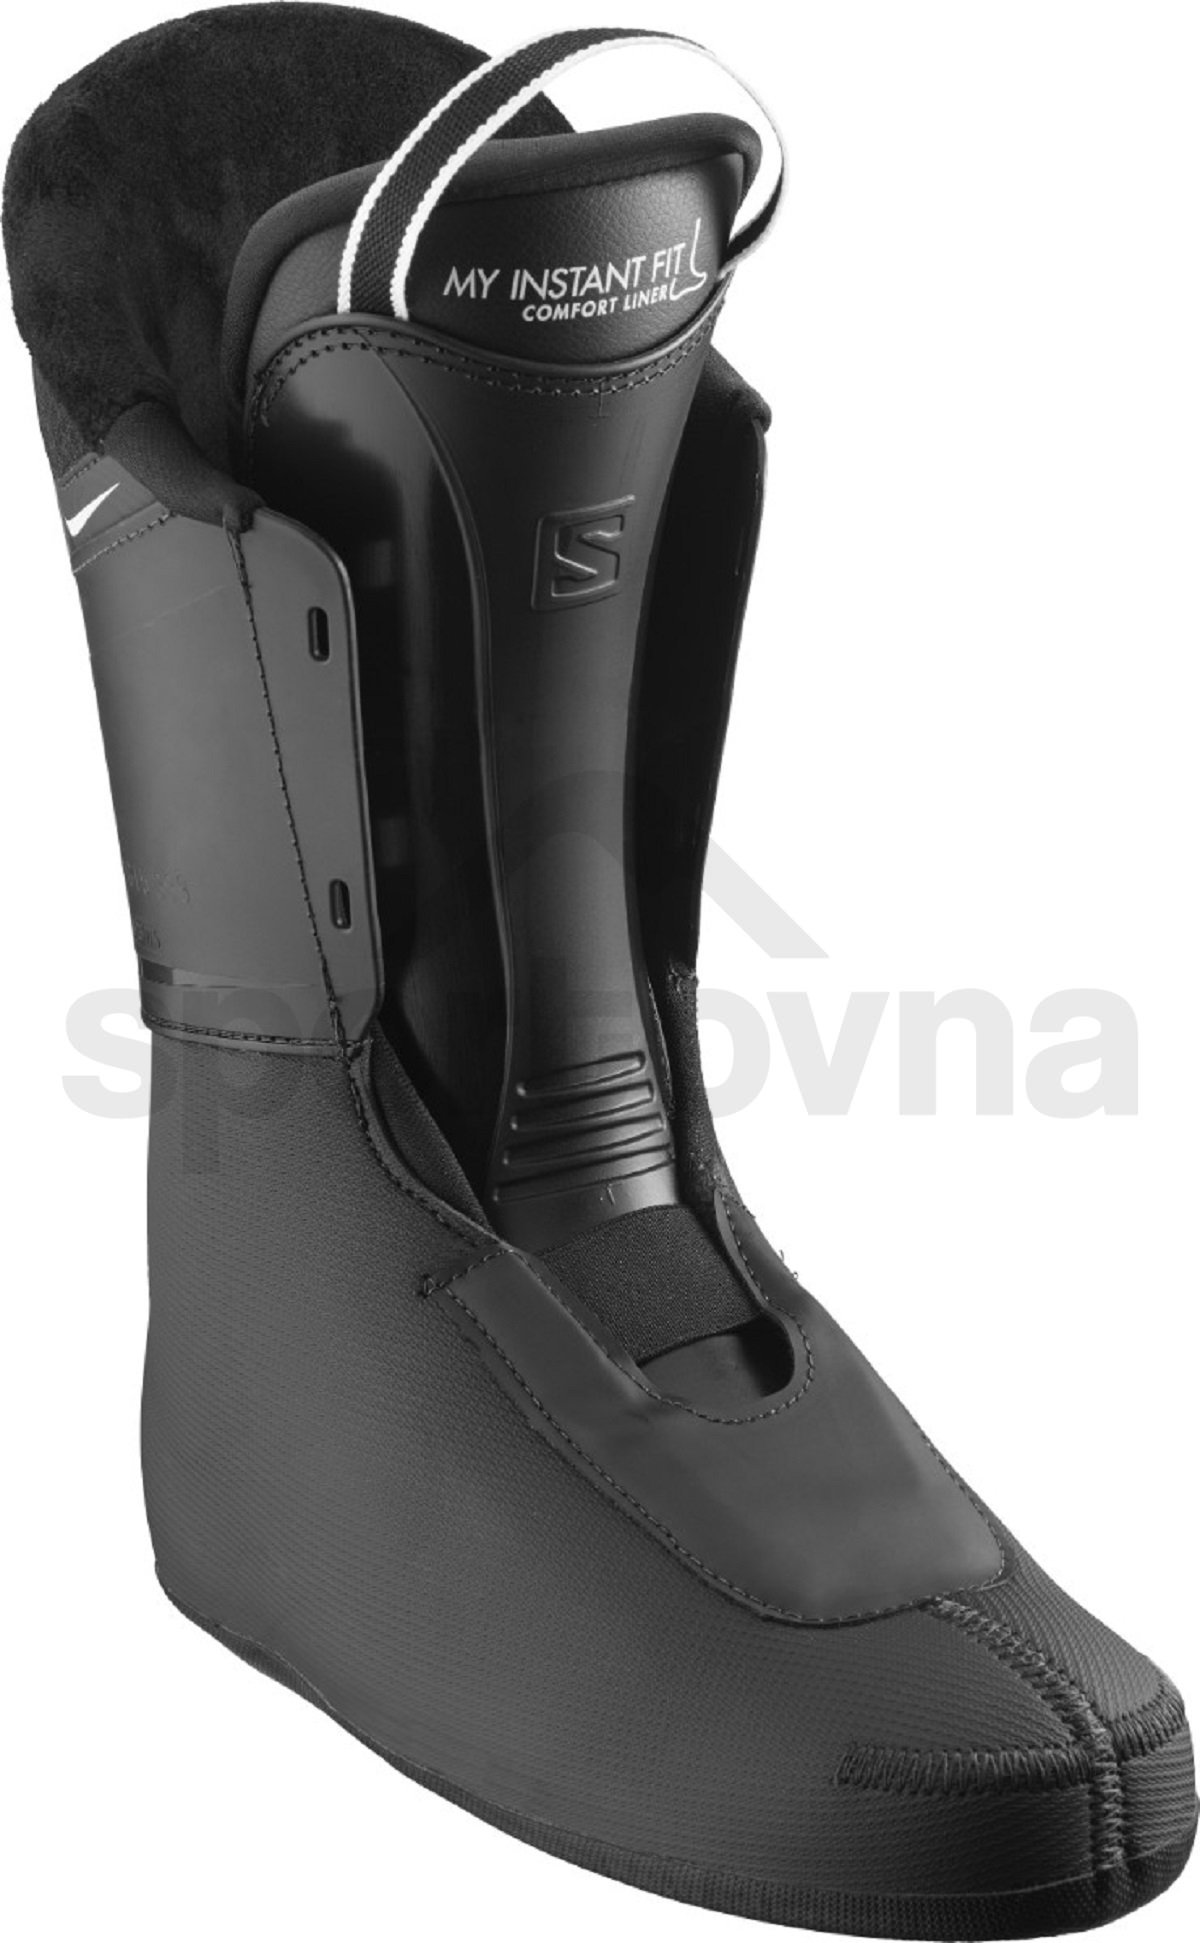 Lyžařské boty Salomon S/Pro HV 80 IC Black M - černá/modrá